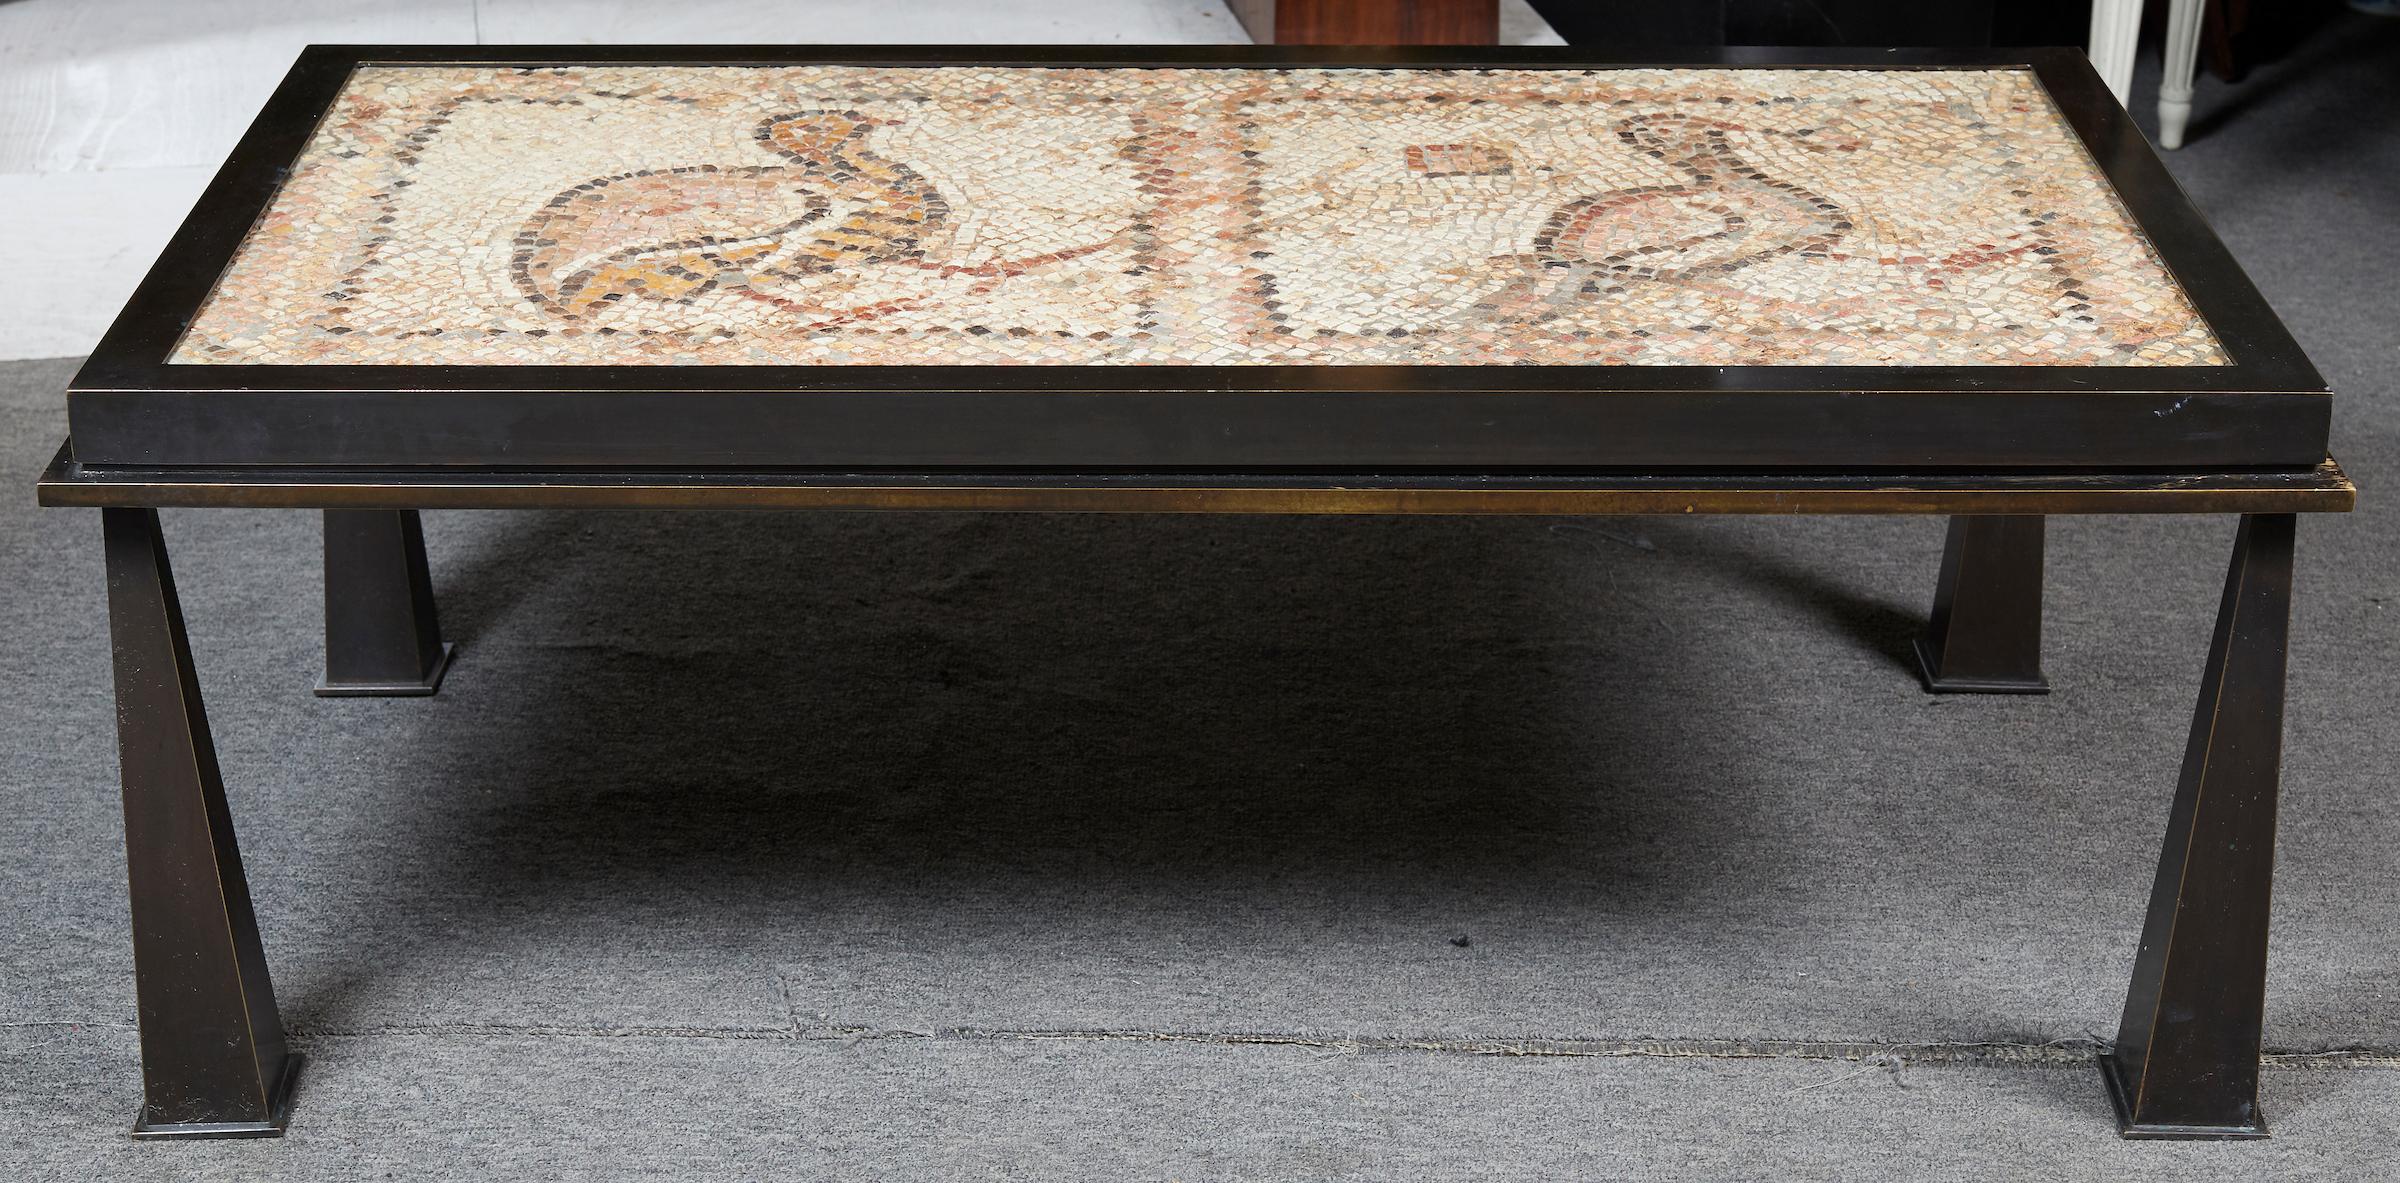 Intéressante table basse rectangulaire en bronze patiné équipée d'un plateau en mosaïque de pierre de style romain classique antique représentant deux oiseaux . Le socle a été fabriqué sur mesure pour le plateau en pierre ancienne.